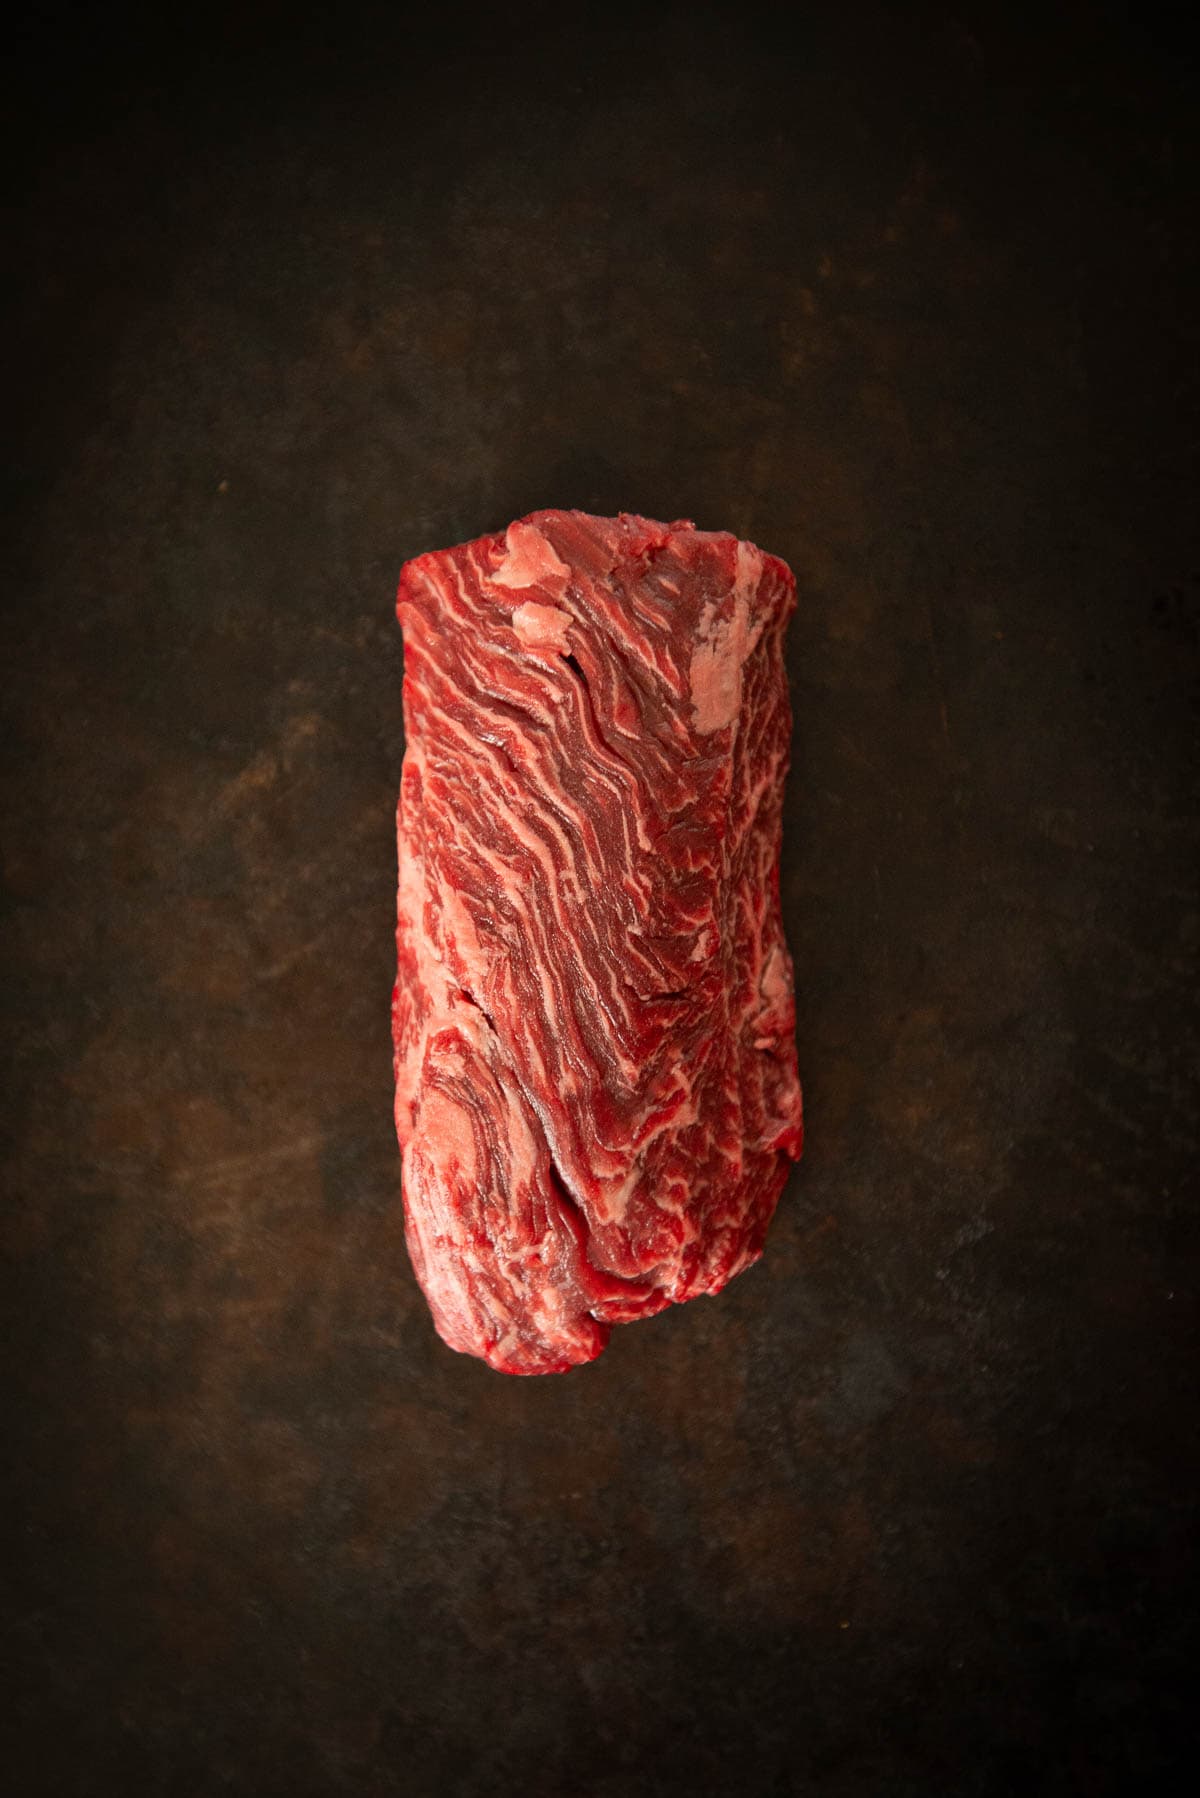 A piece of steak on a dark background.